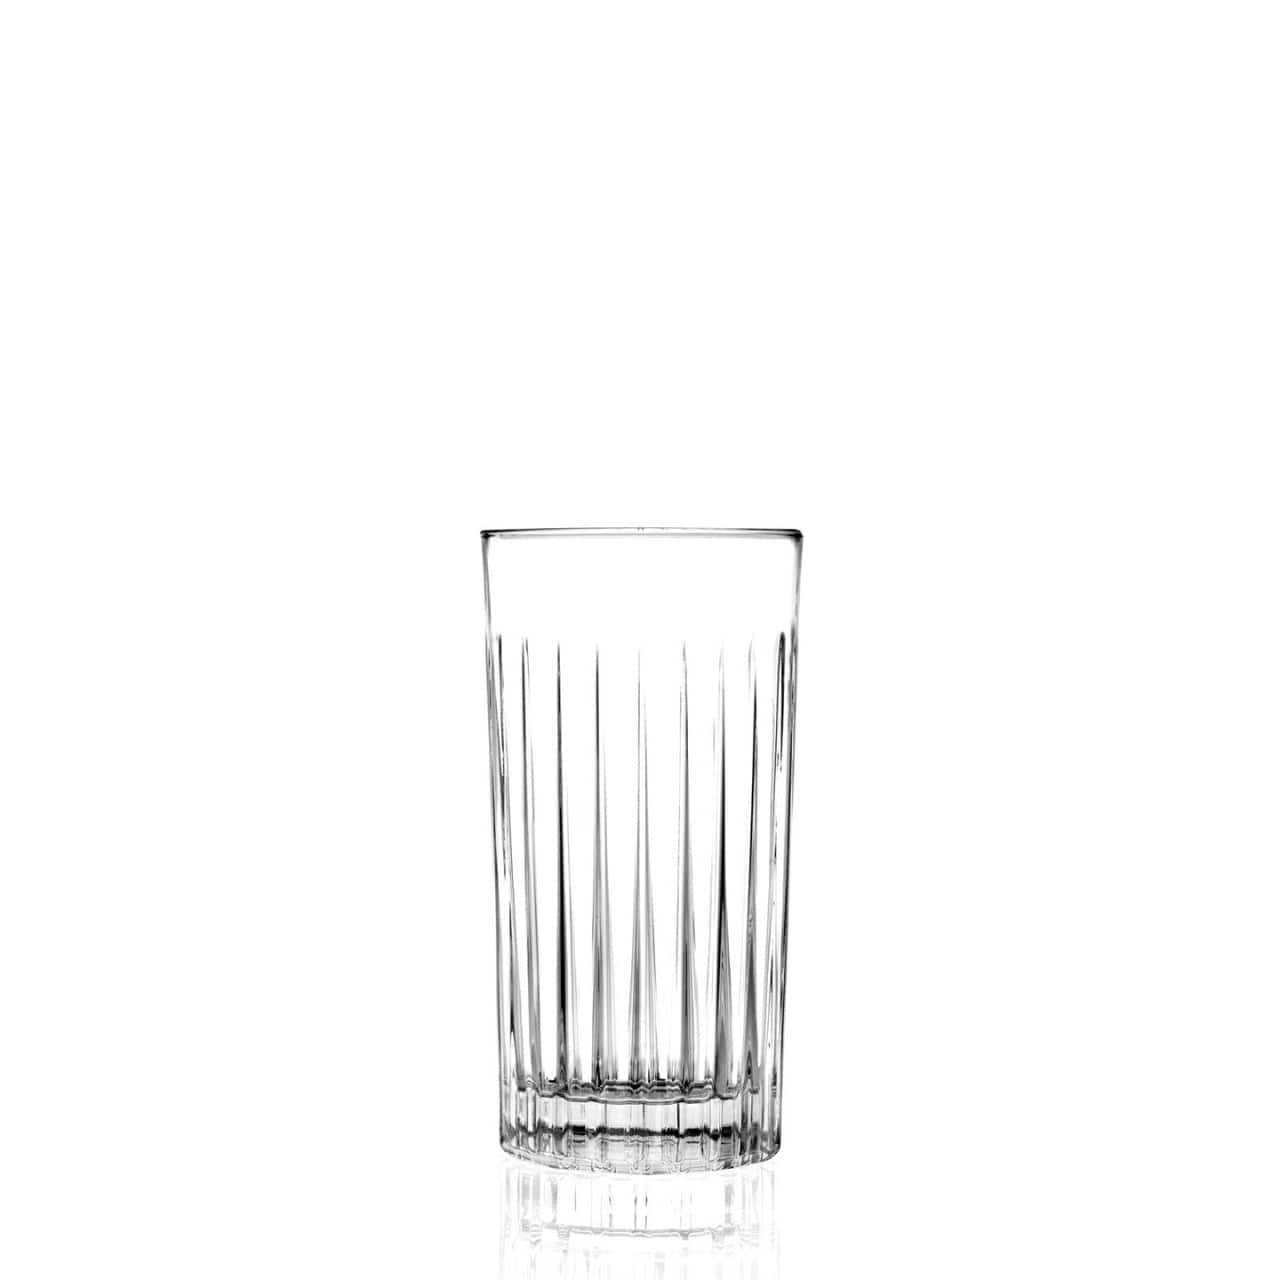 RCR - Cristalleria Italiana Longdrinkglazen Longdrinkglas 44cl - 6-delige set | Timeless